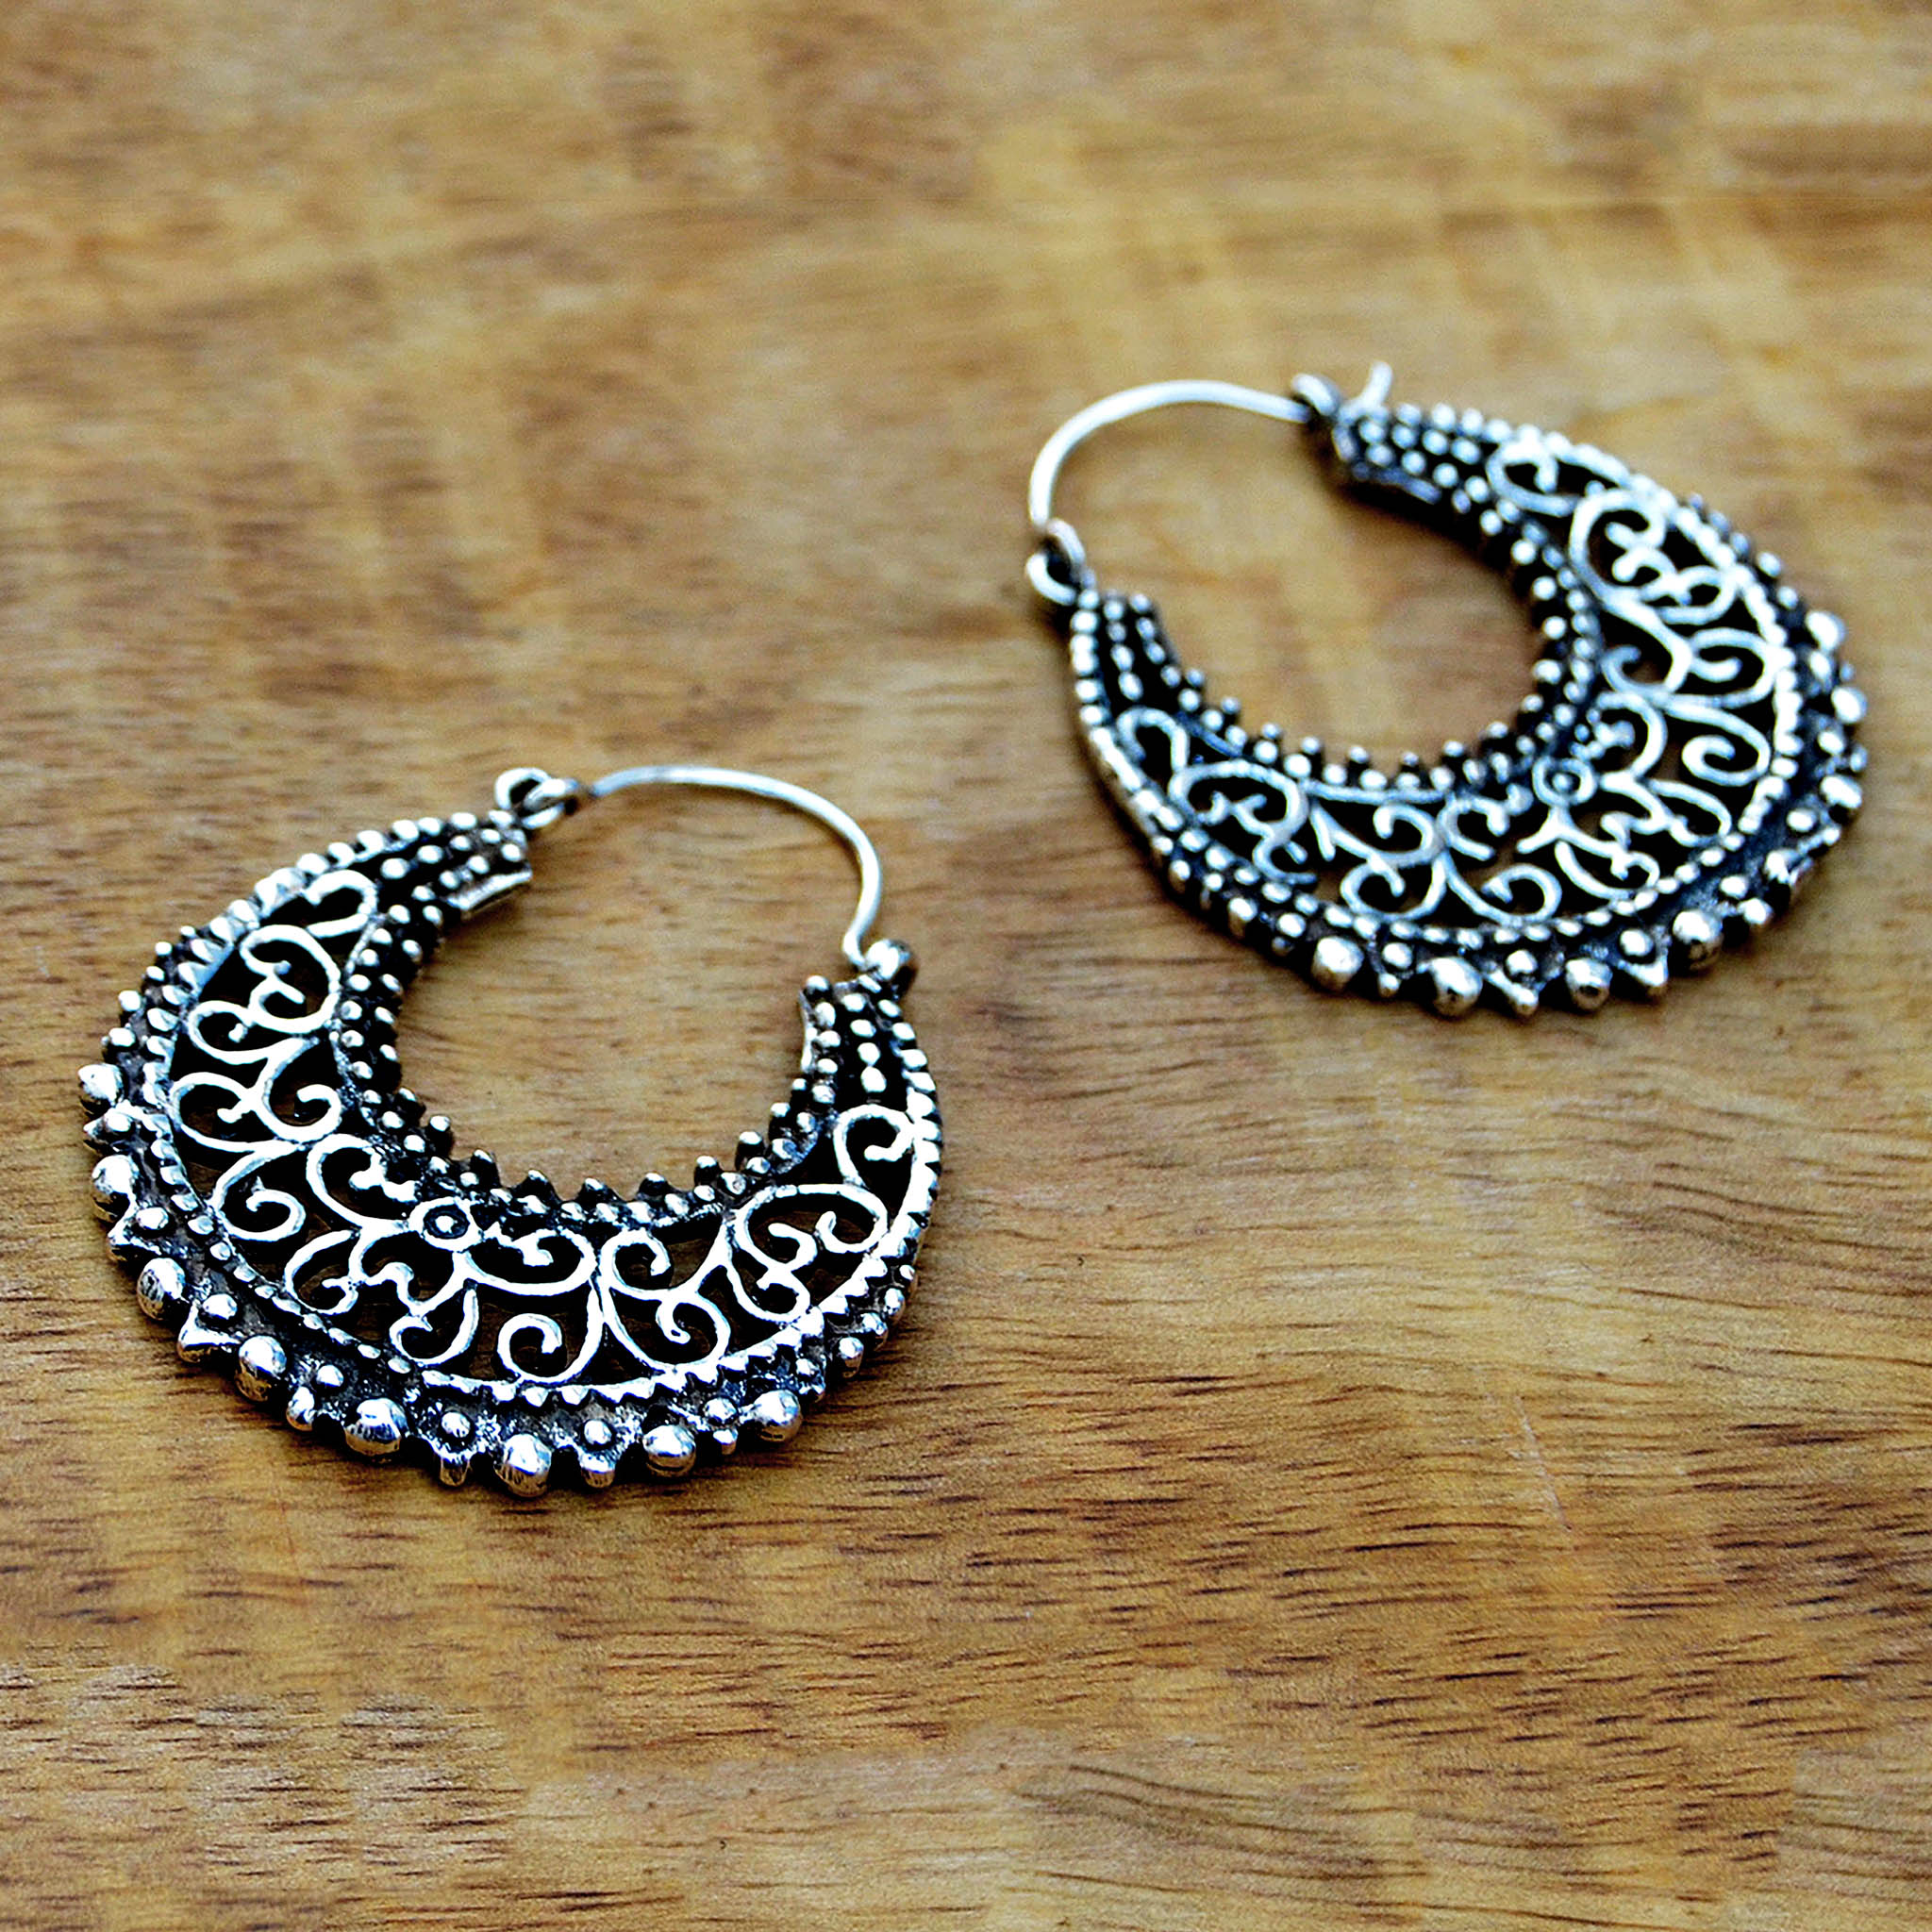 Ethnic filigree earrings